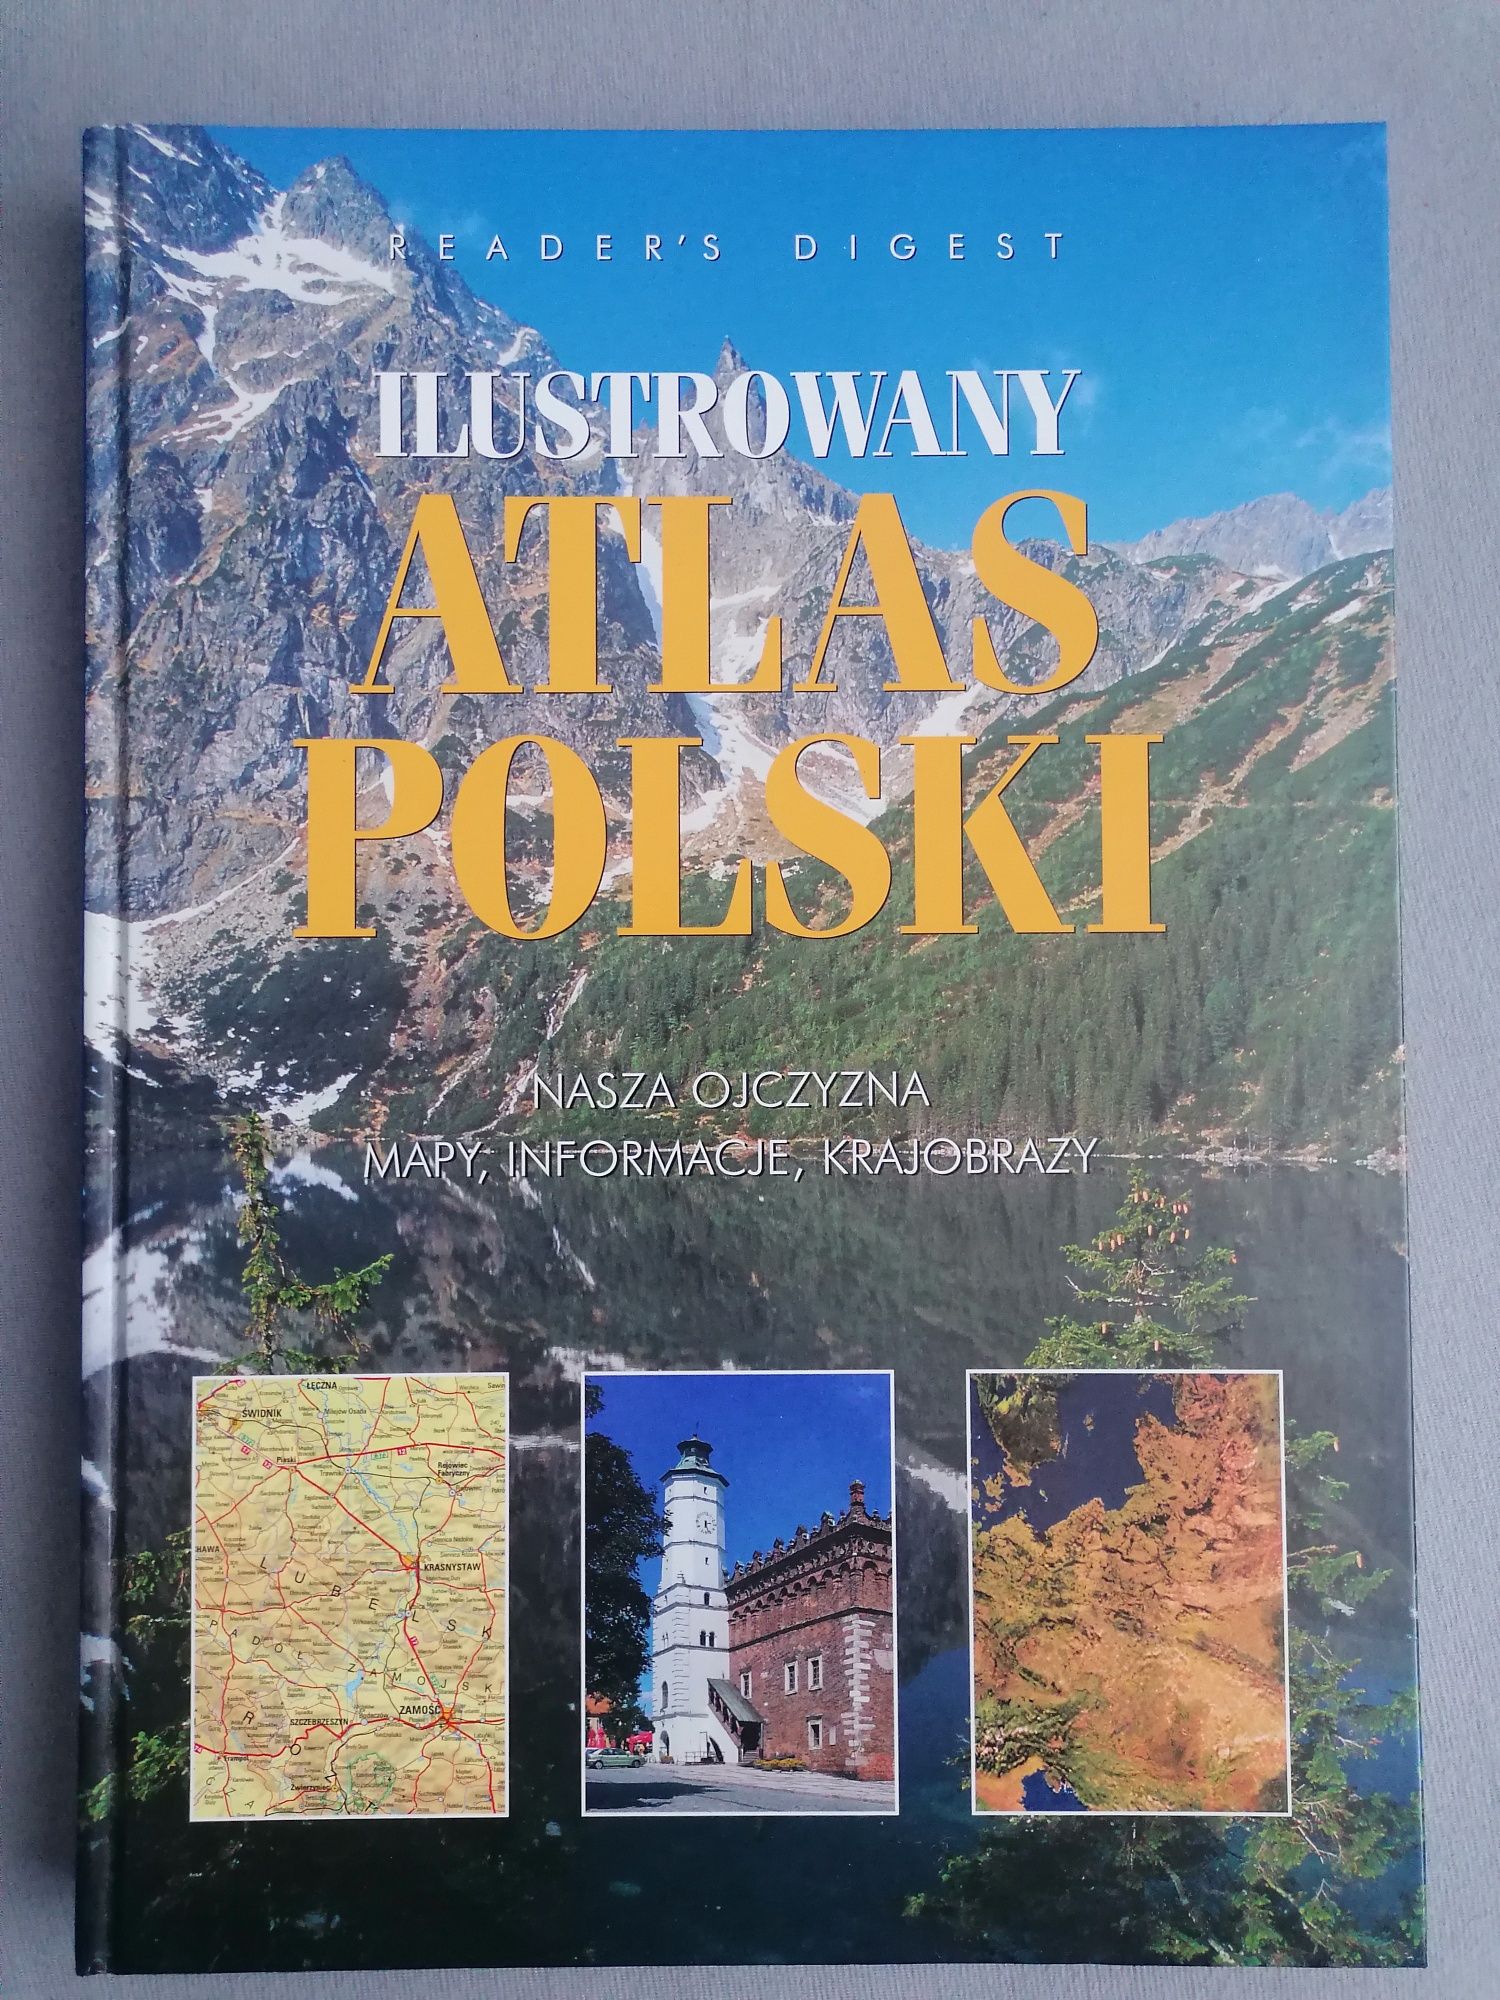 Zestaw 2 różnych Atlasów, Atlas świata oraz Atlas Polski, ilustrowany